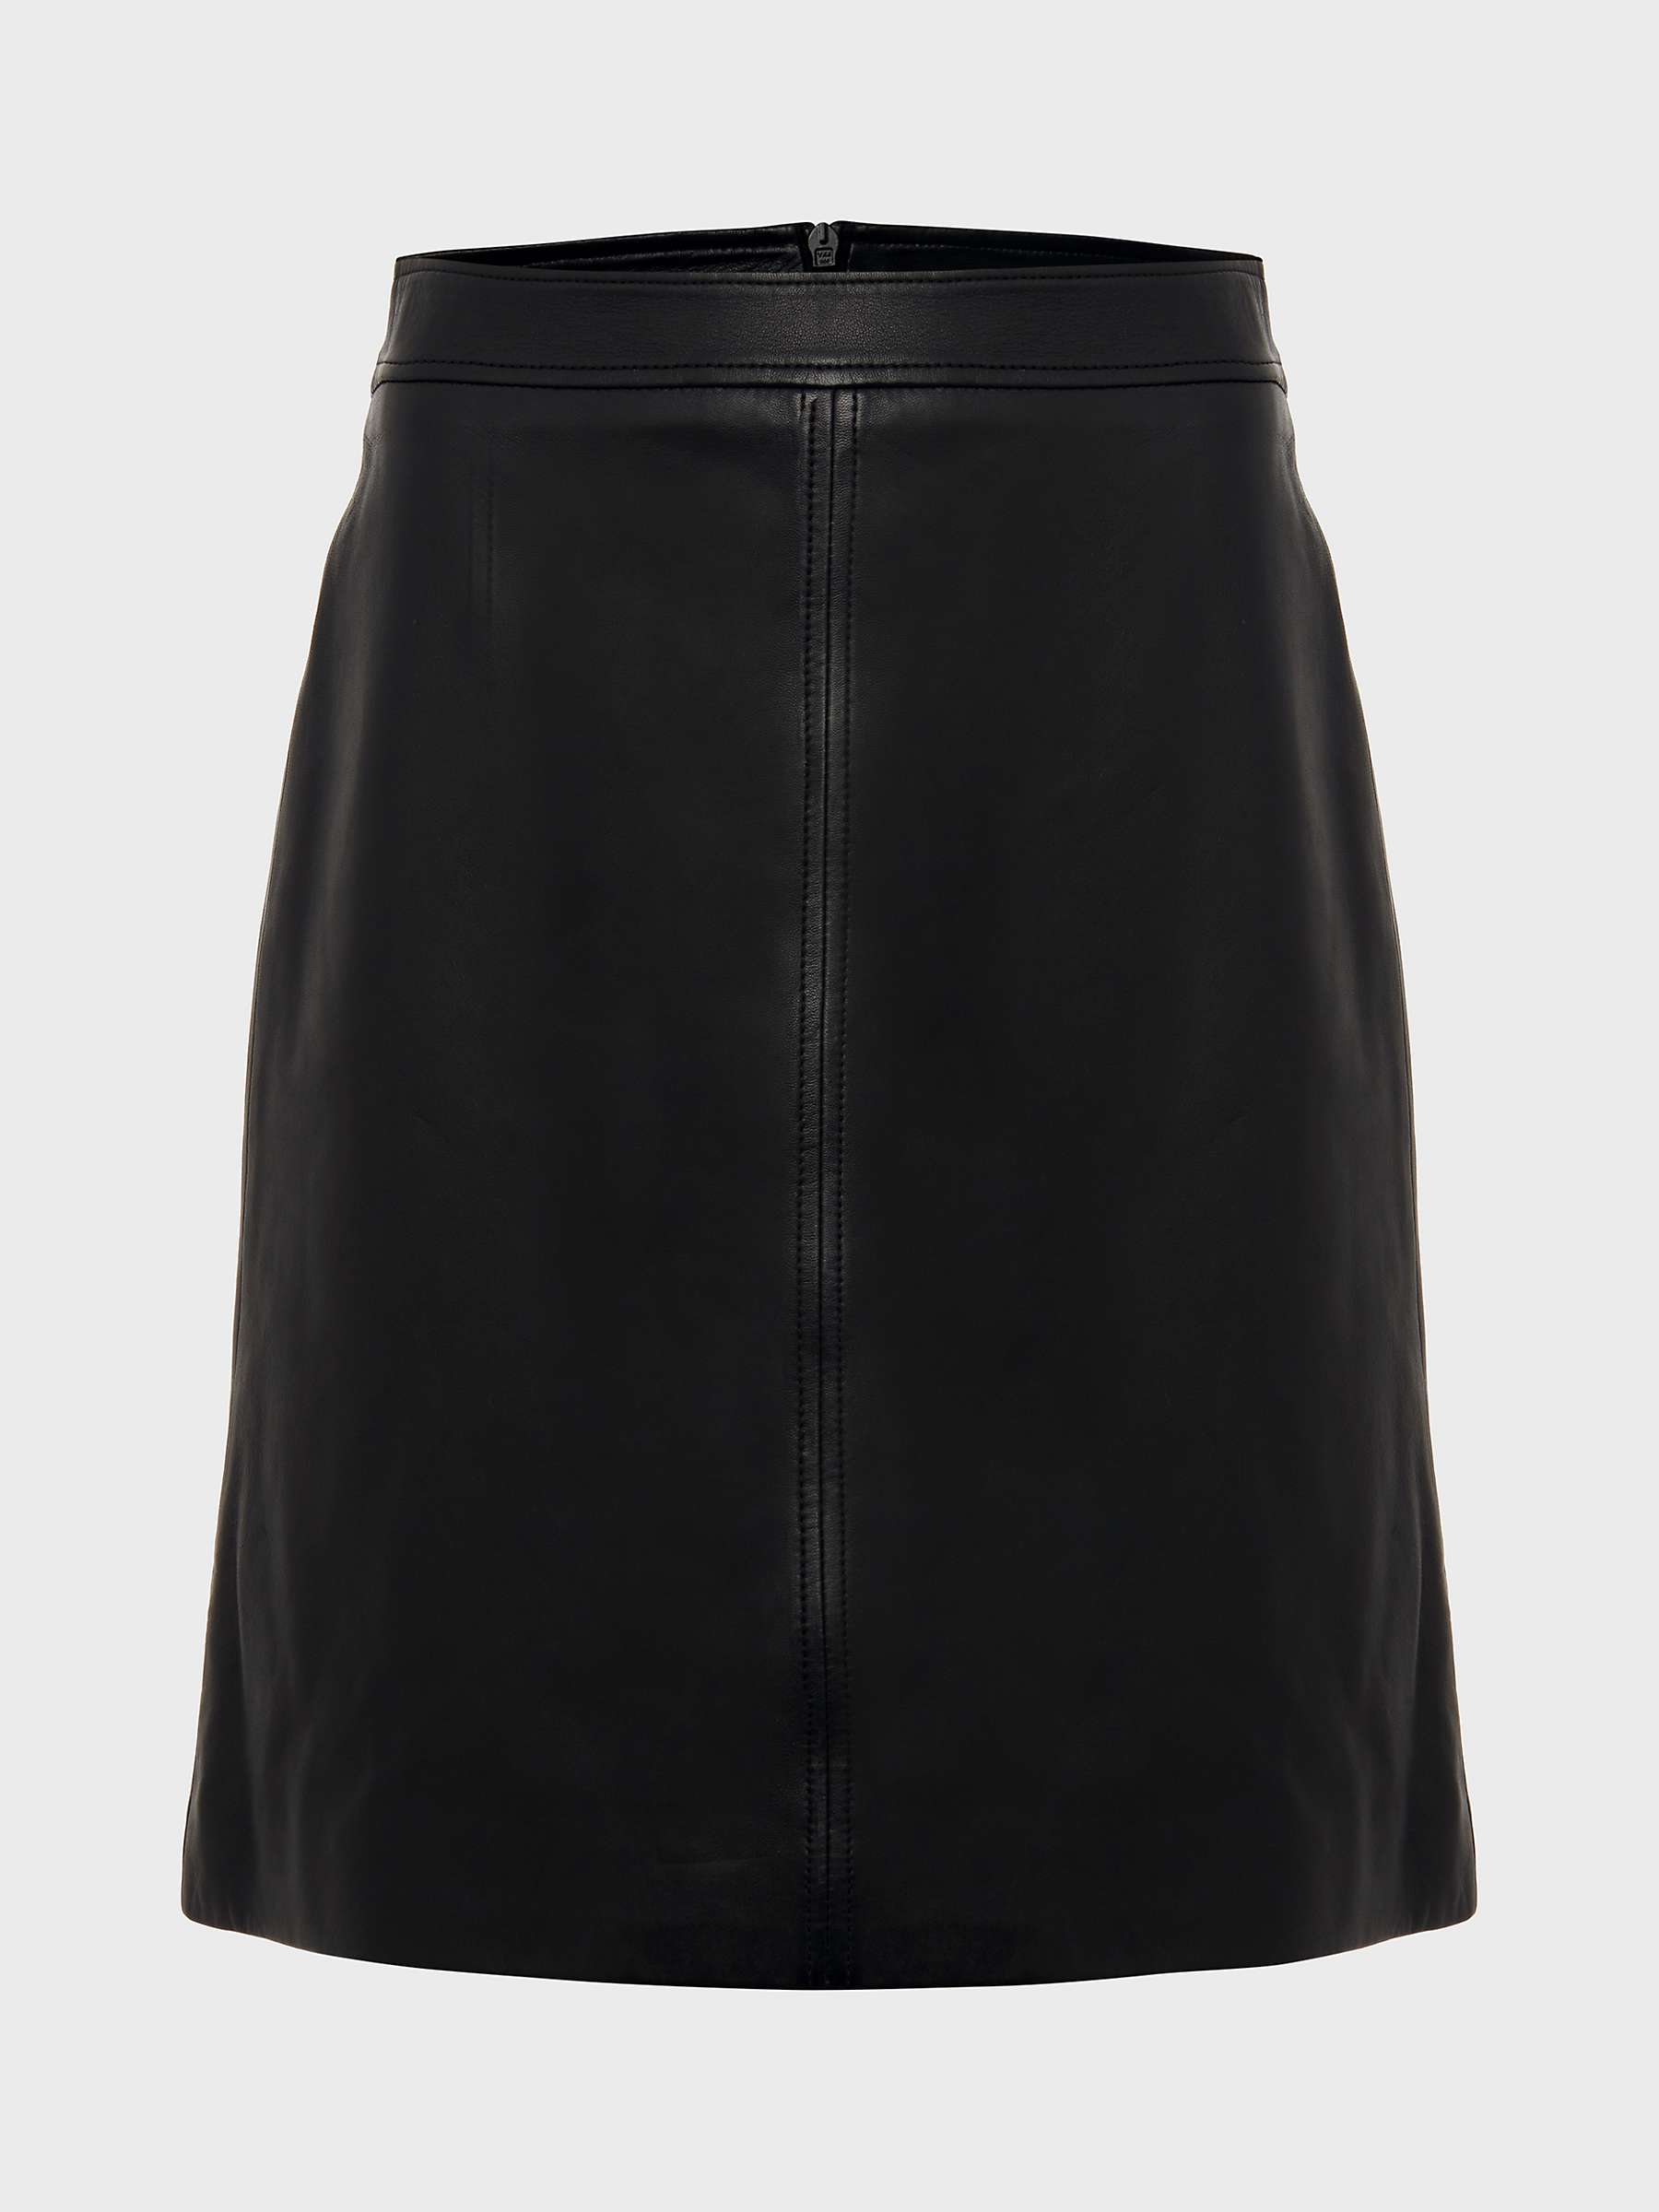 Buy Hobbs Annalise Leather Skirt, Black Online at johnlewis.com